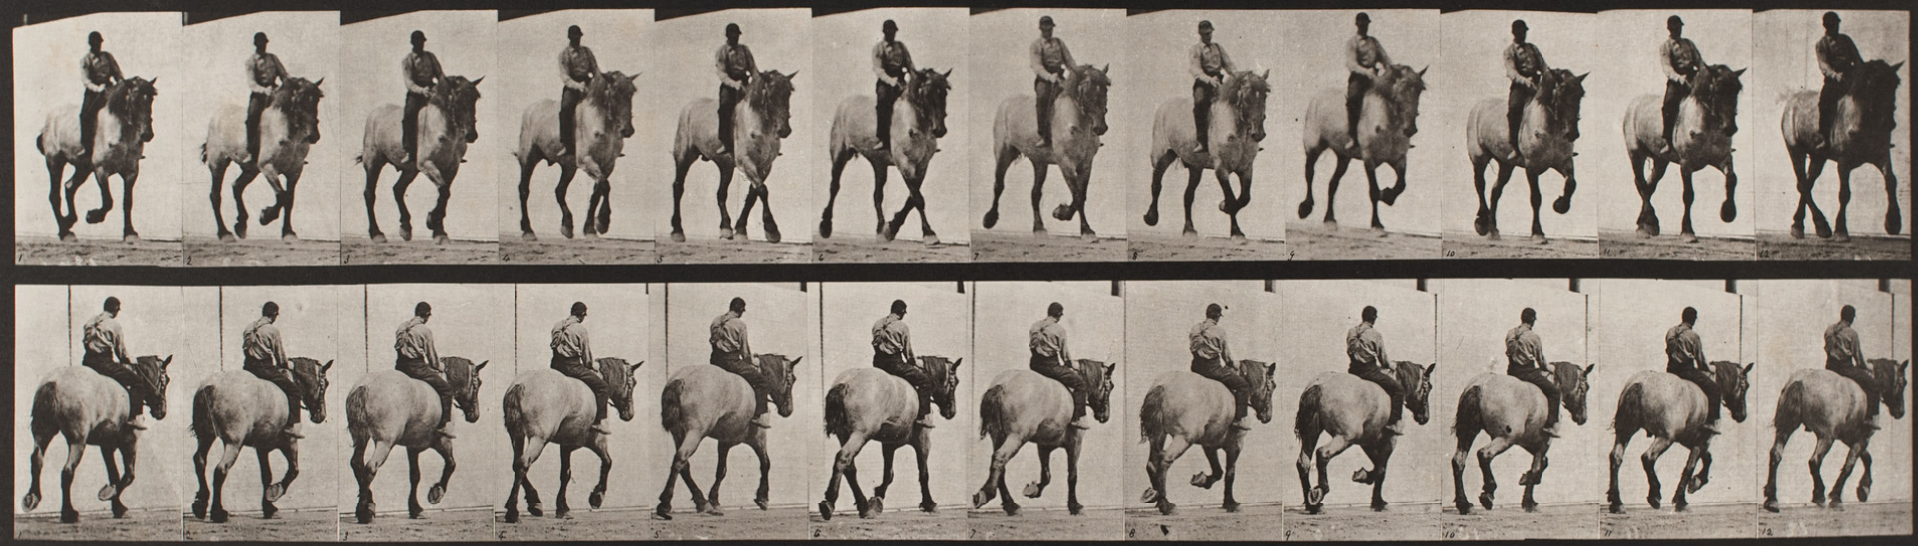 Eadweard Muybridge, Deska 599, Pohyb zvířat: "Dusel" klusající na holém hřbetě, 1872-1885 / vytištěno 1887, Zdroj: Artsy